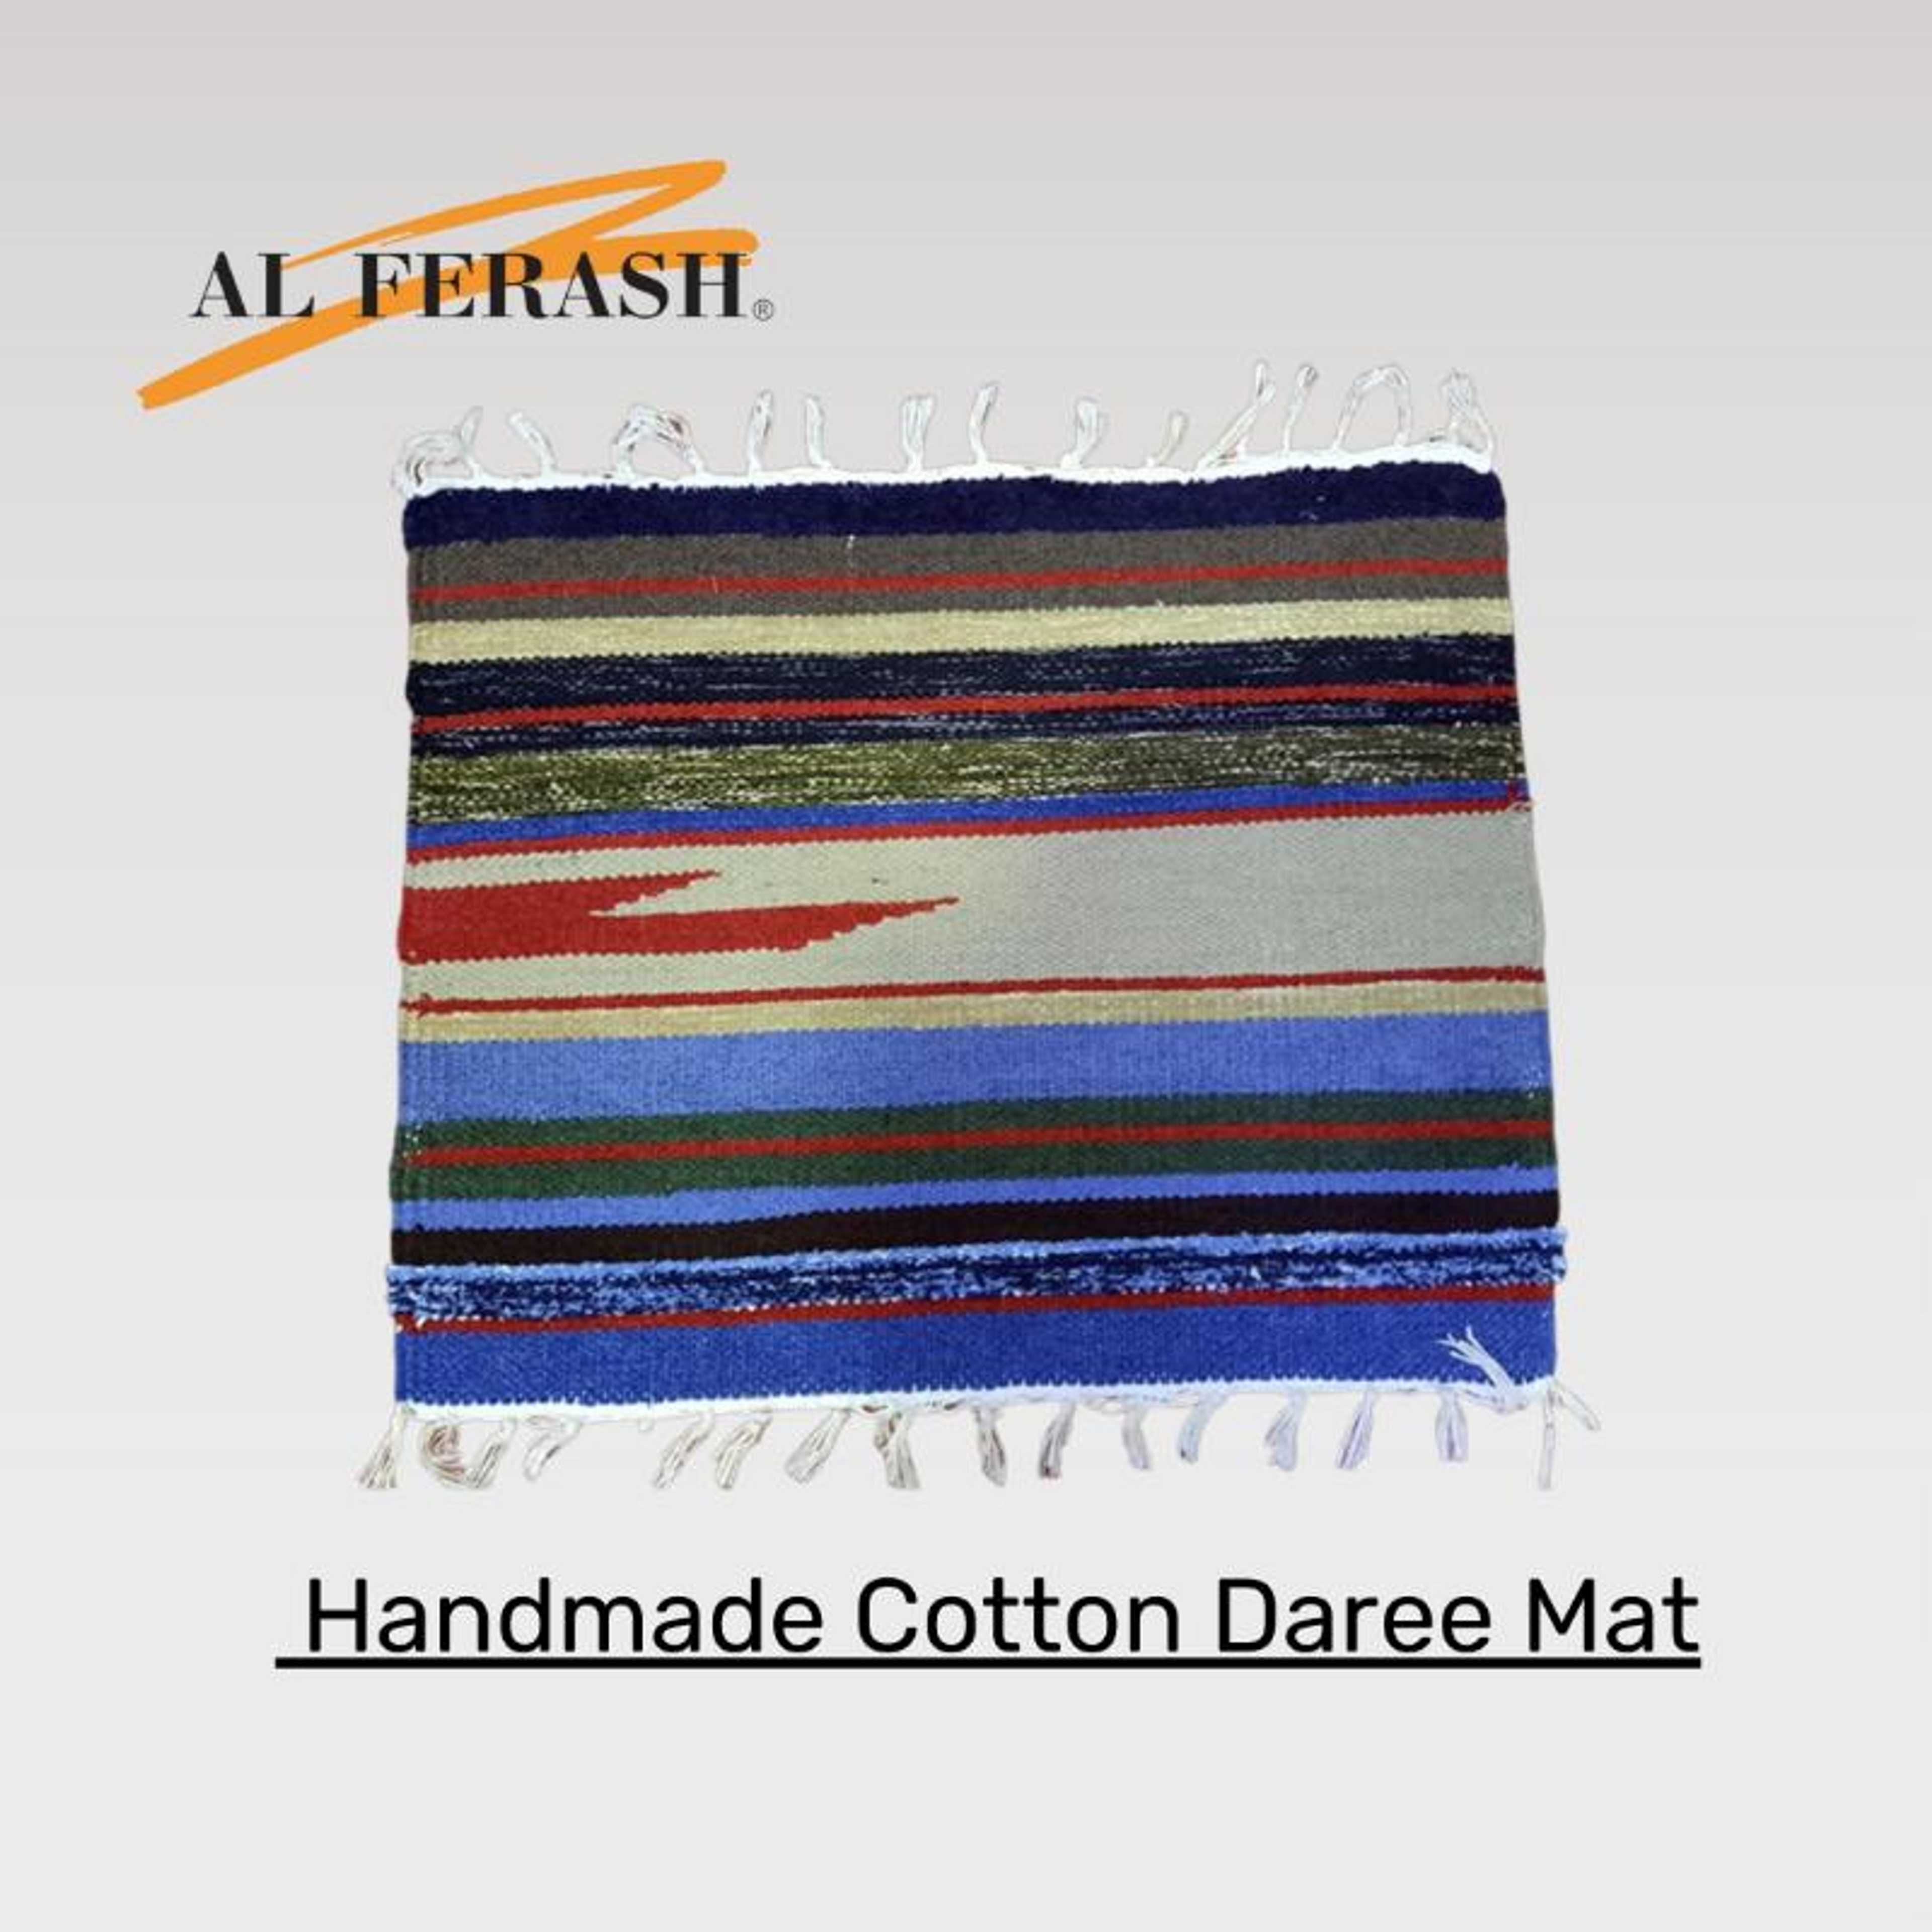 AL Ferash Handmade Cotton Daree Mat | Floor Mat | Room Rug (Darrie)